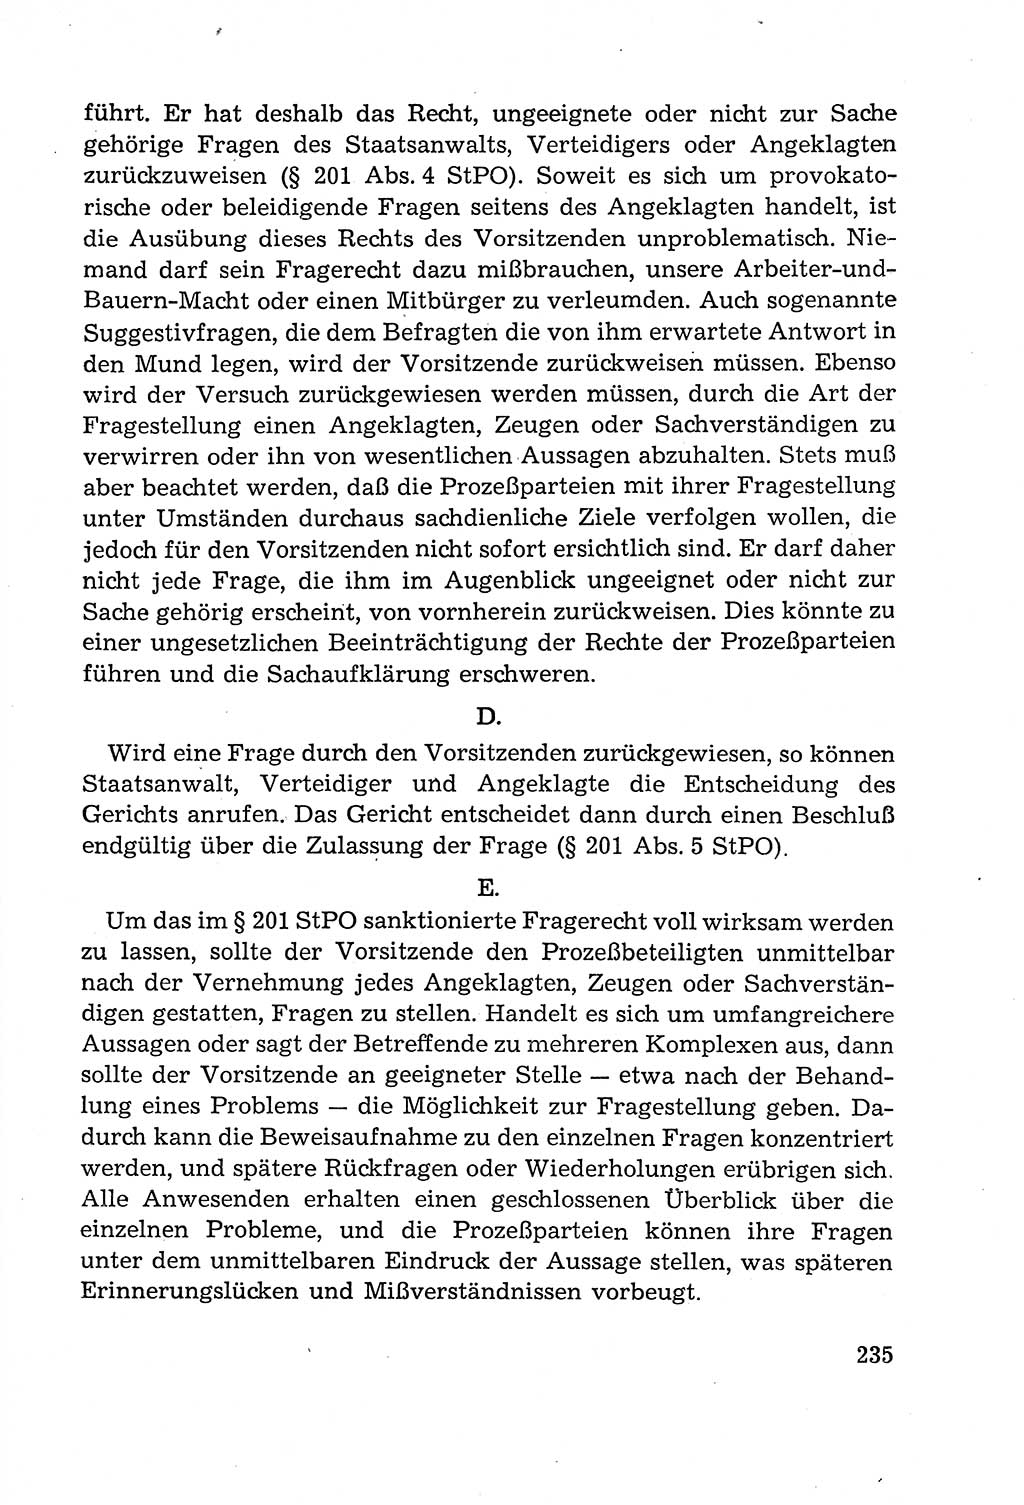 Leitfaden des Strafprozeßrechts der Deutschen Demokratischen Republik (DDR) 1959, Seite 235 (LF StPR DDR 1959, S. 235)